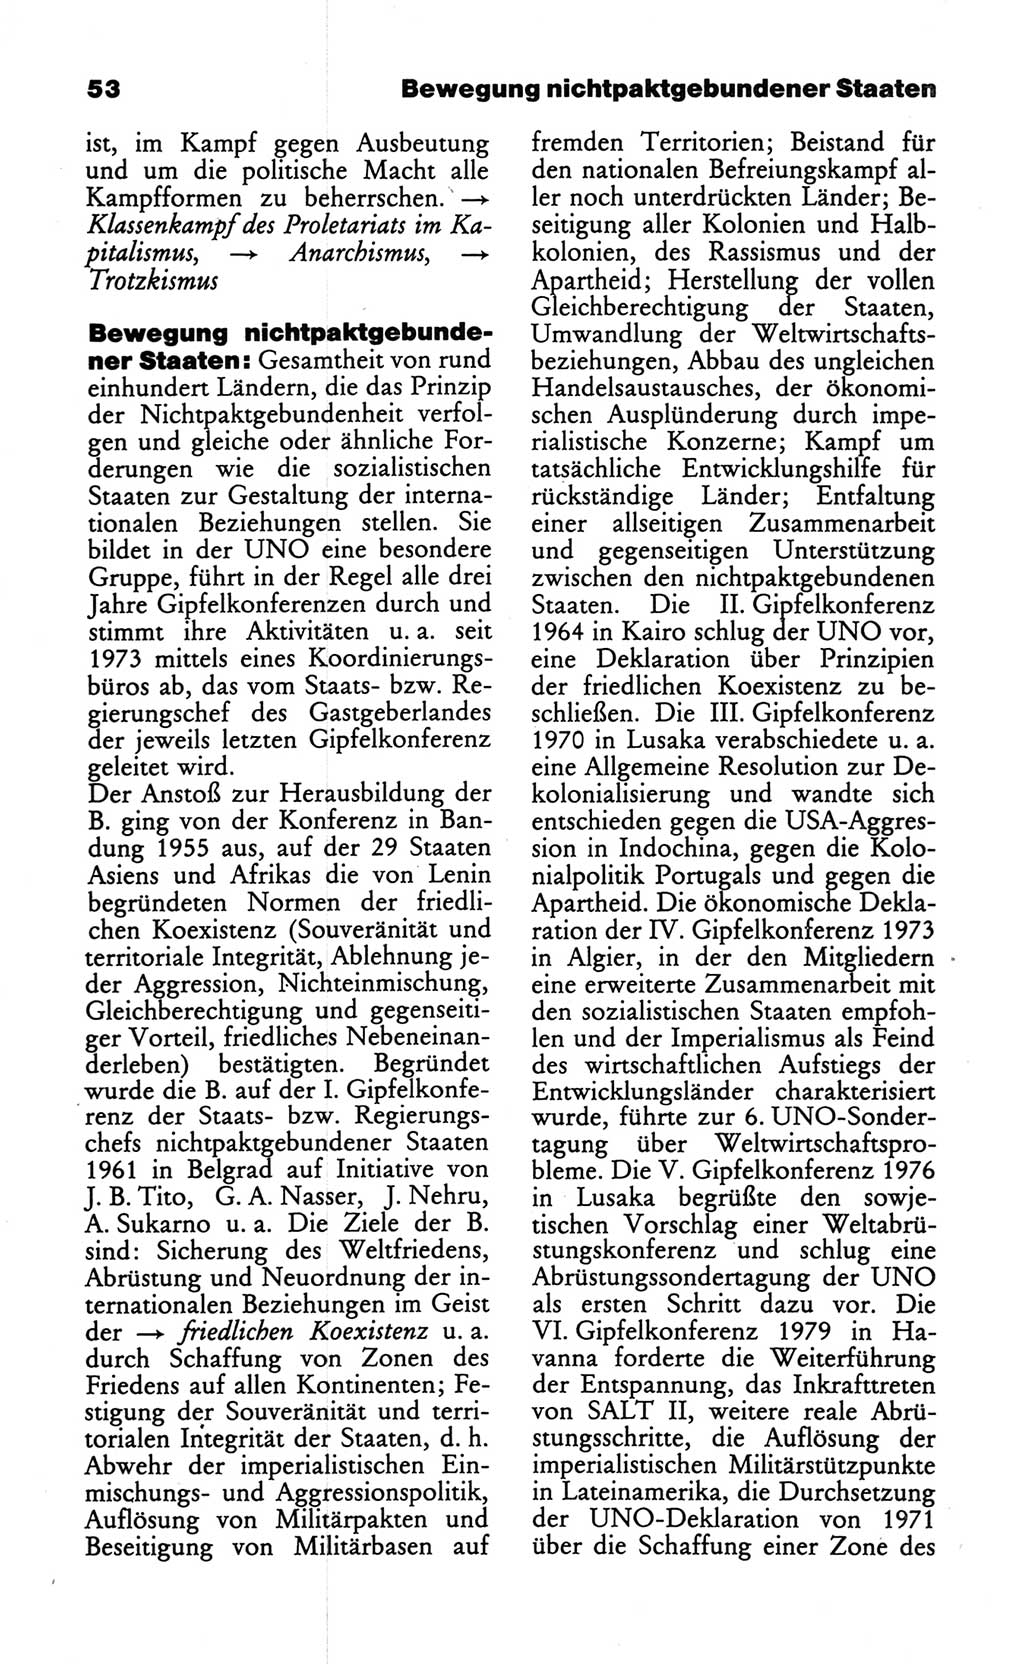 Wörterbuch des wissenschaftlichen Kommunismus [Deutsche Demokratische Republik (DDR)] 1986, Seite 53 (Wb. wiss. Komm. DDR 1986, S. 53)